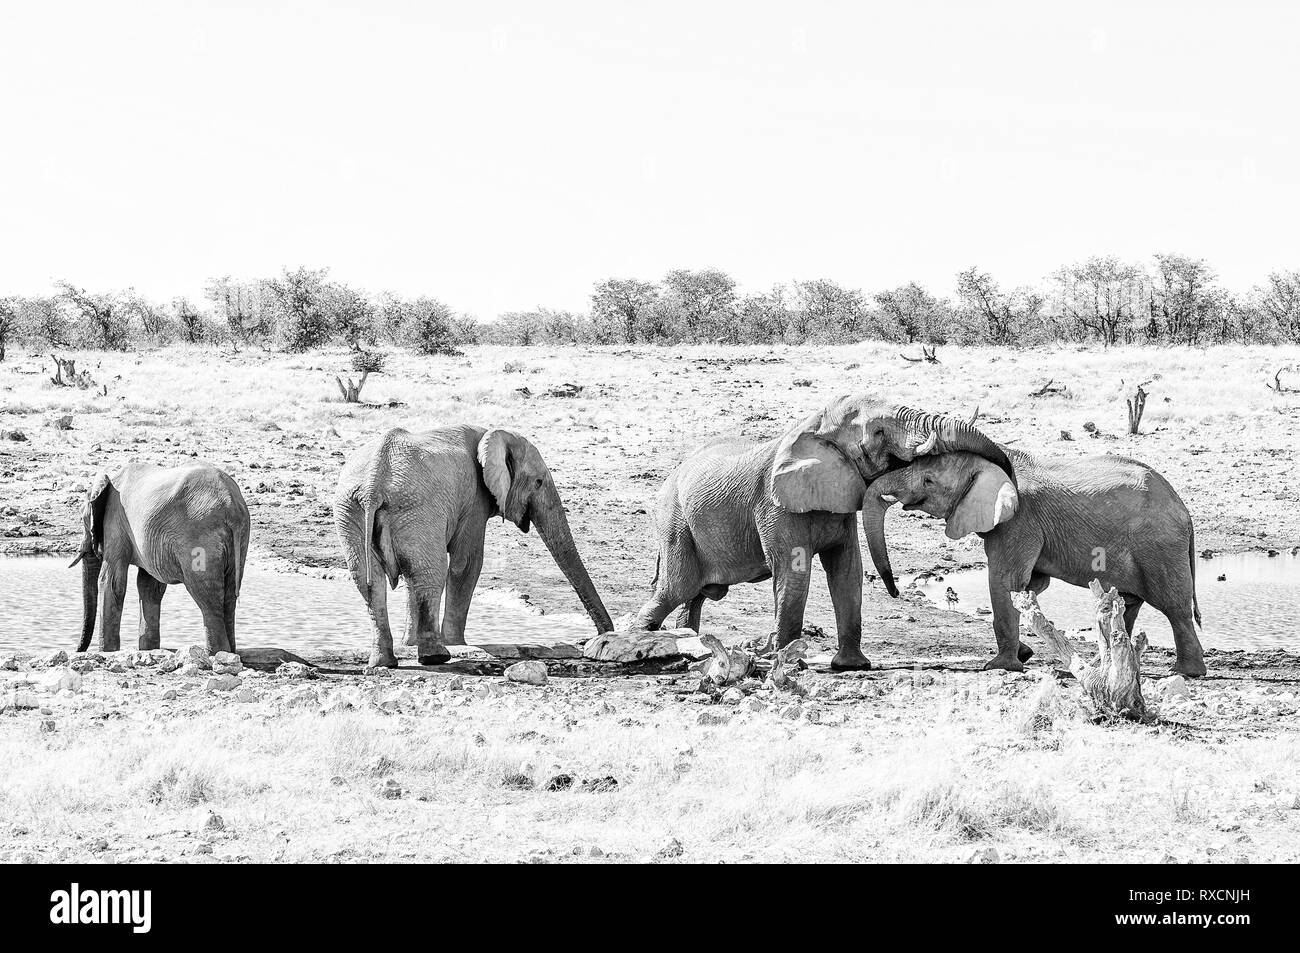 L'interaction sociale entre deux éléphants d'Afrique, Loxodonta africana, à un étang dans le Nord de la Namibie. Monochrome Banque D'Images